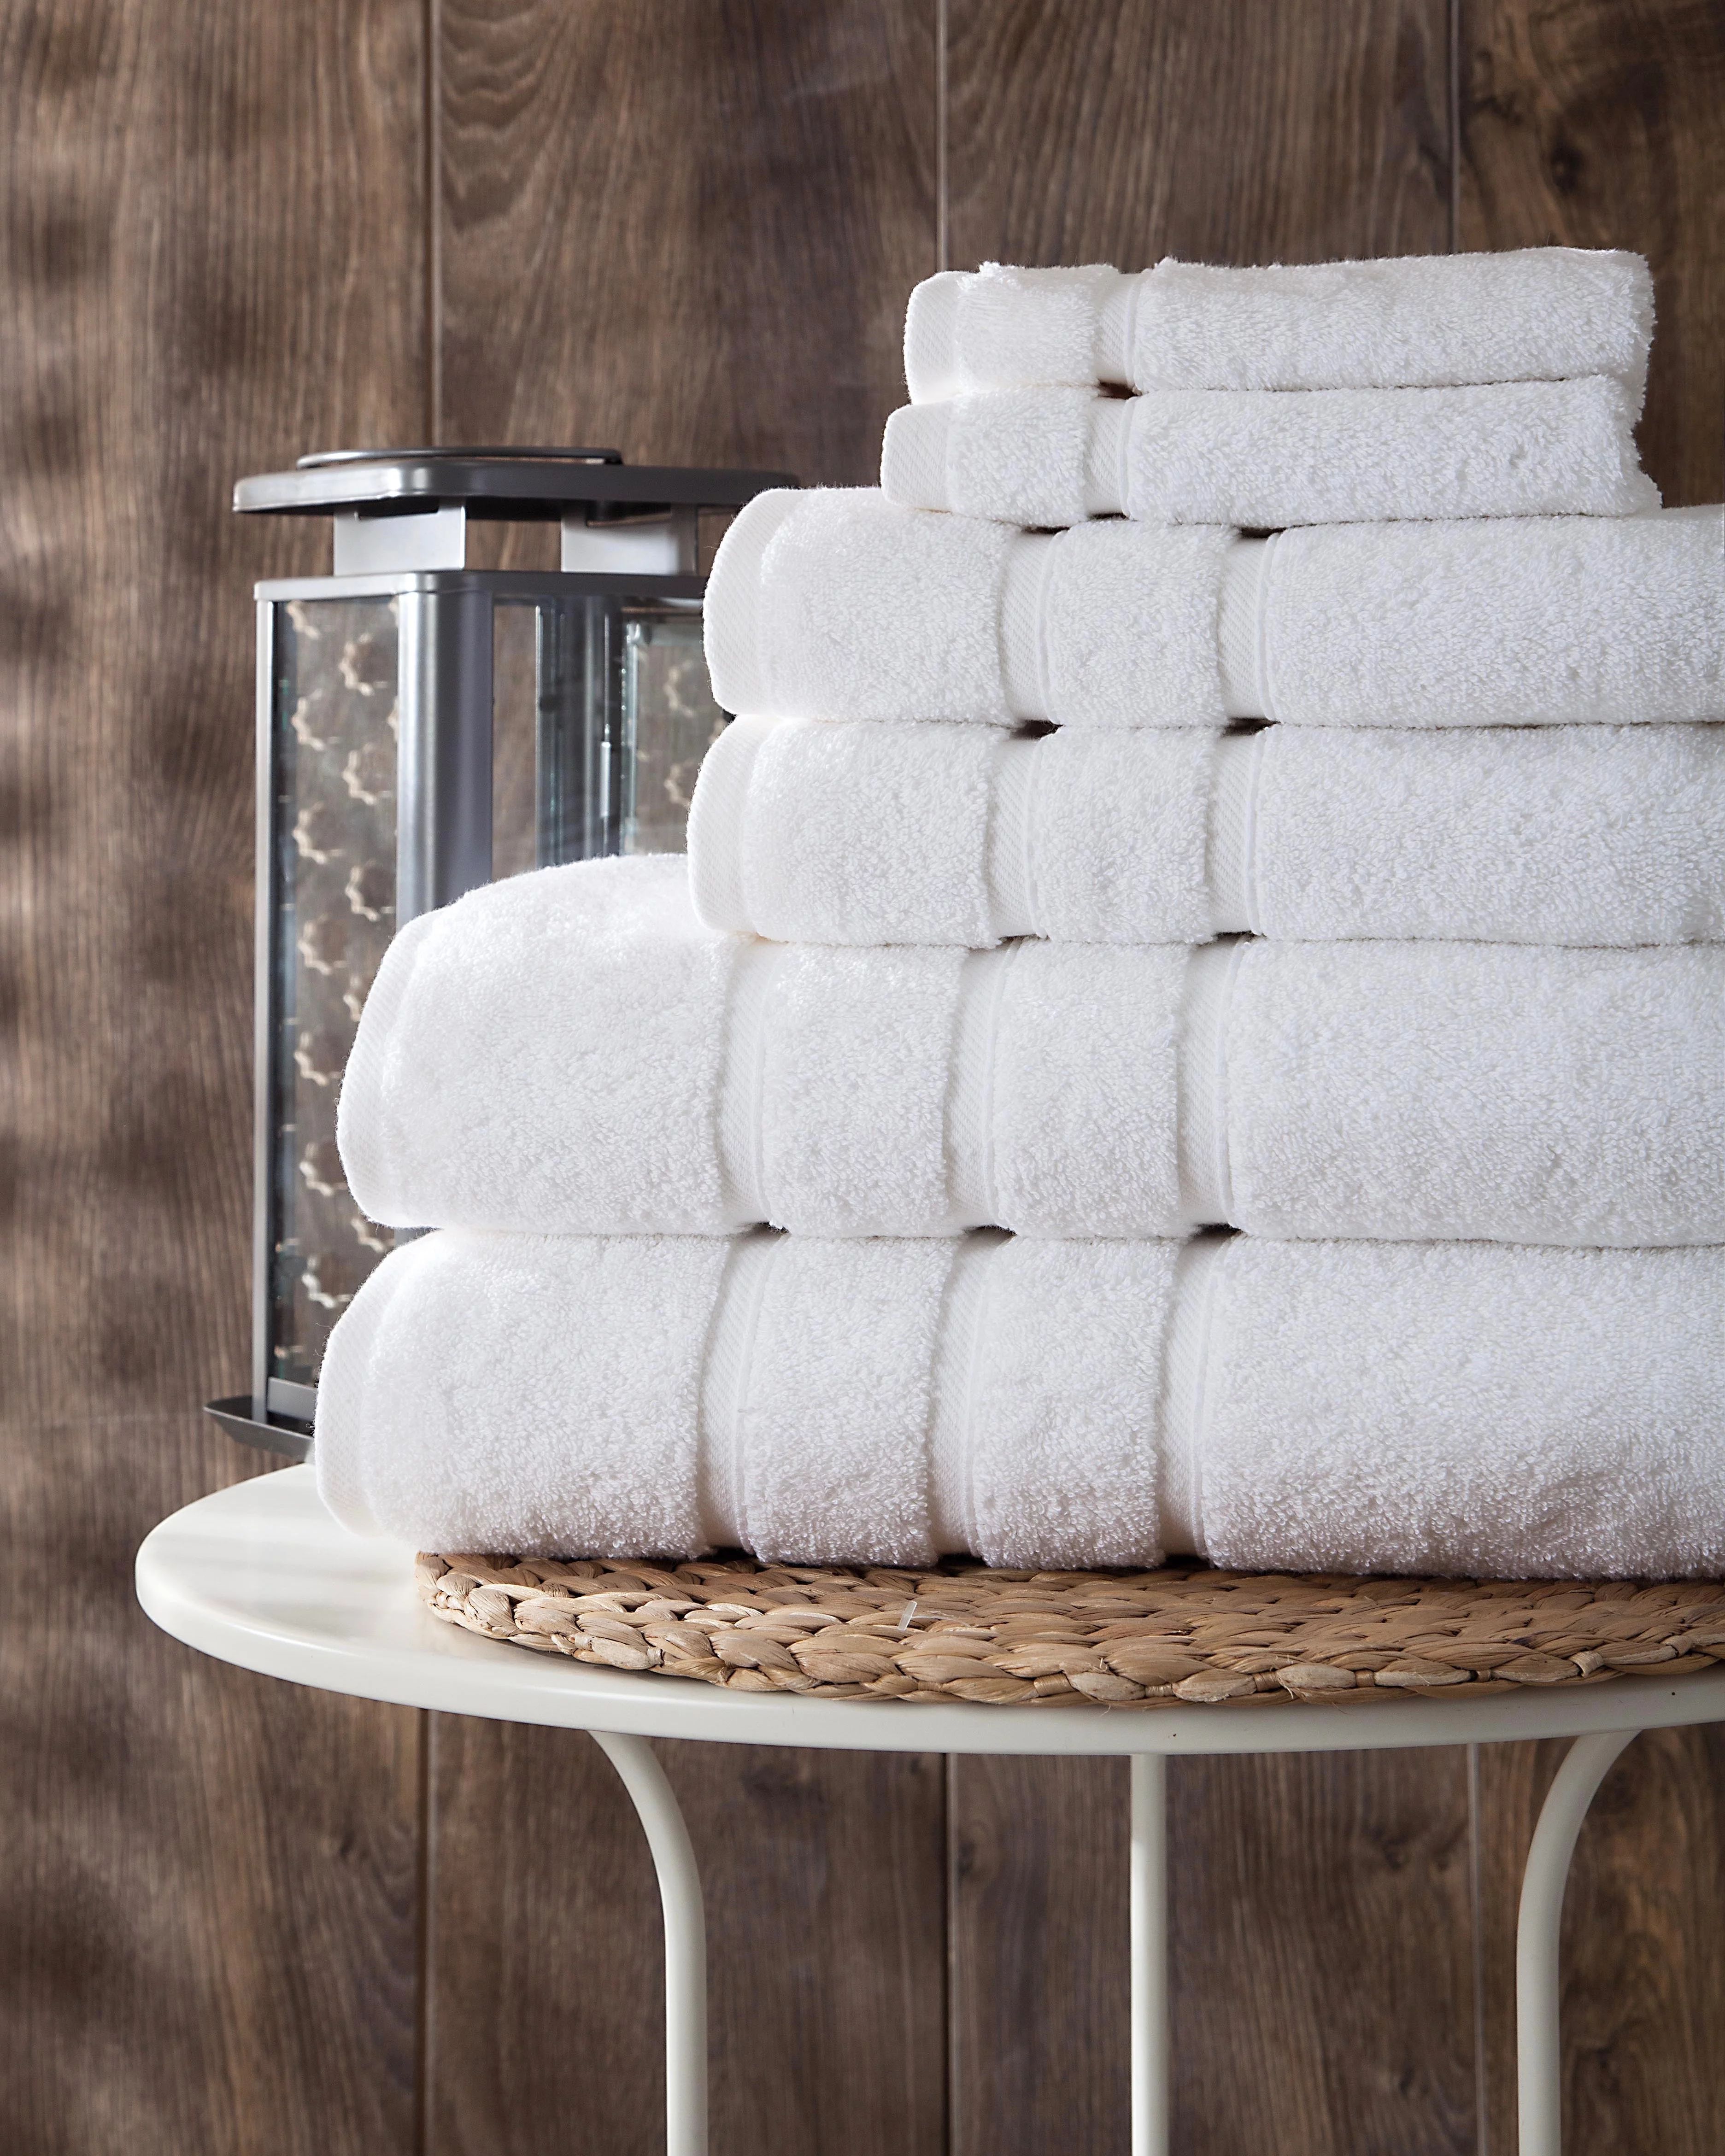 UpThrone Luxury Turkish Cotton White Bath Towels Set of 6- Bathroom Towels - Turkish Bath Towel S... | Walmart (US)